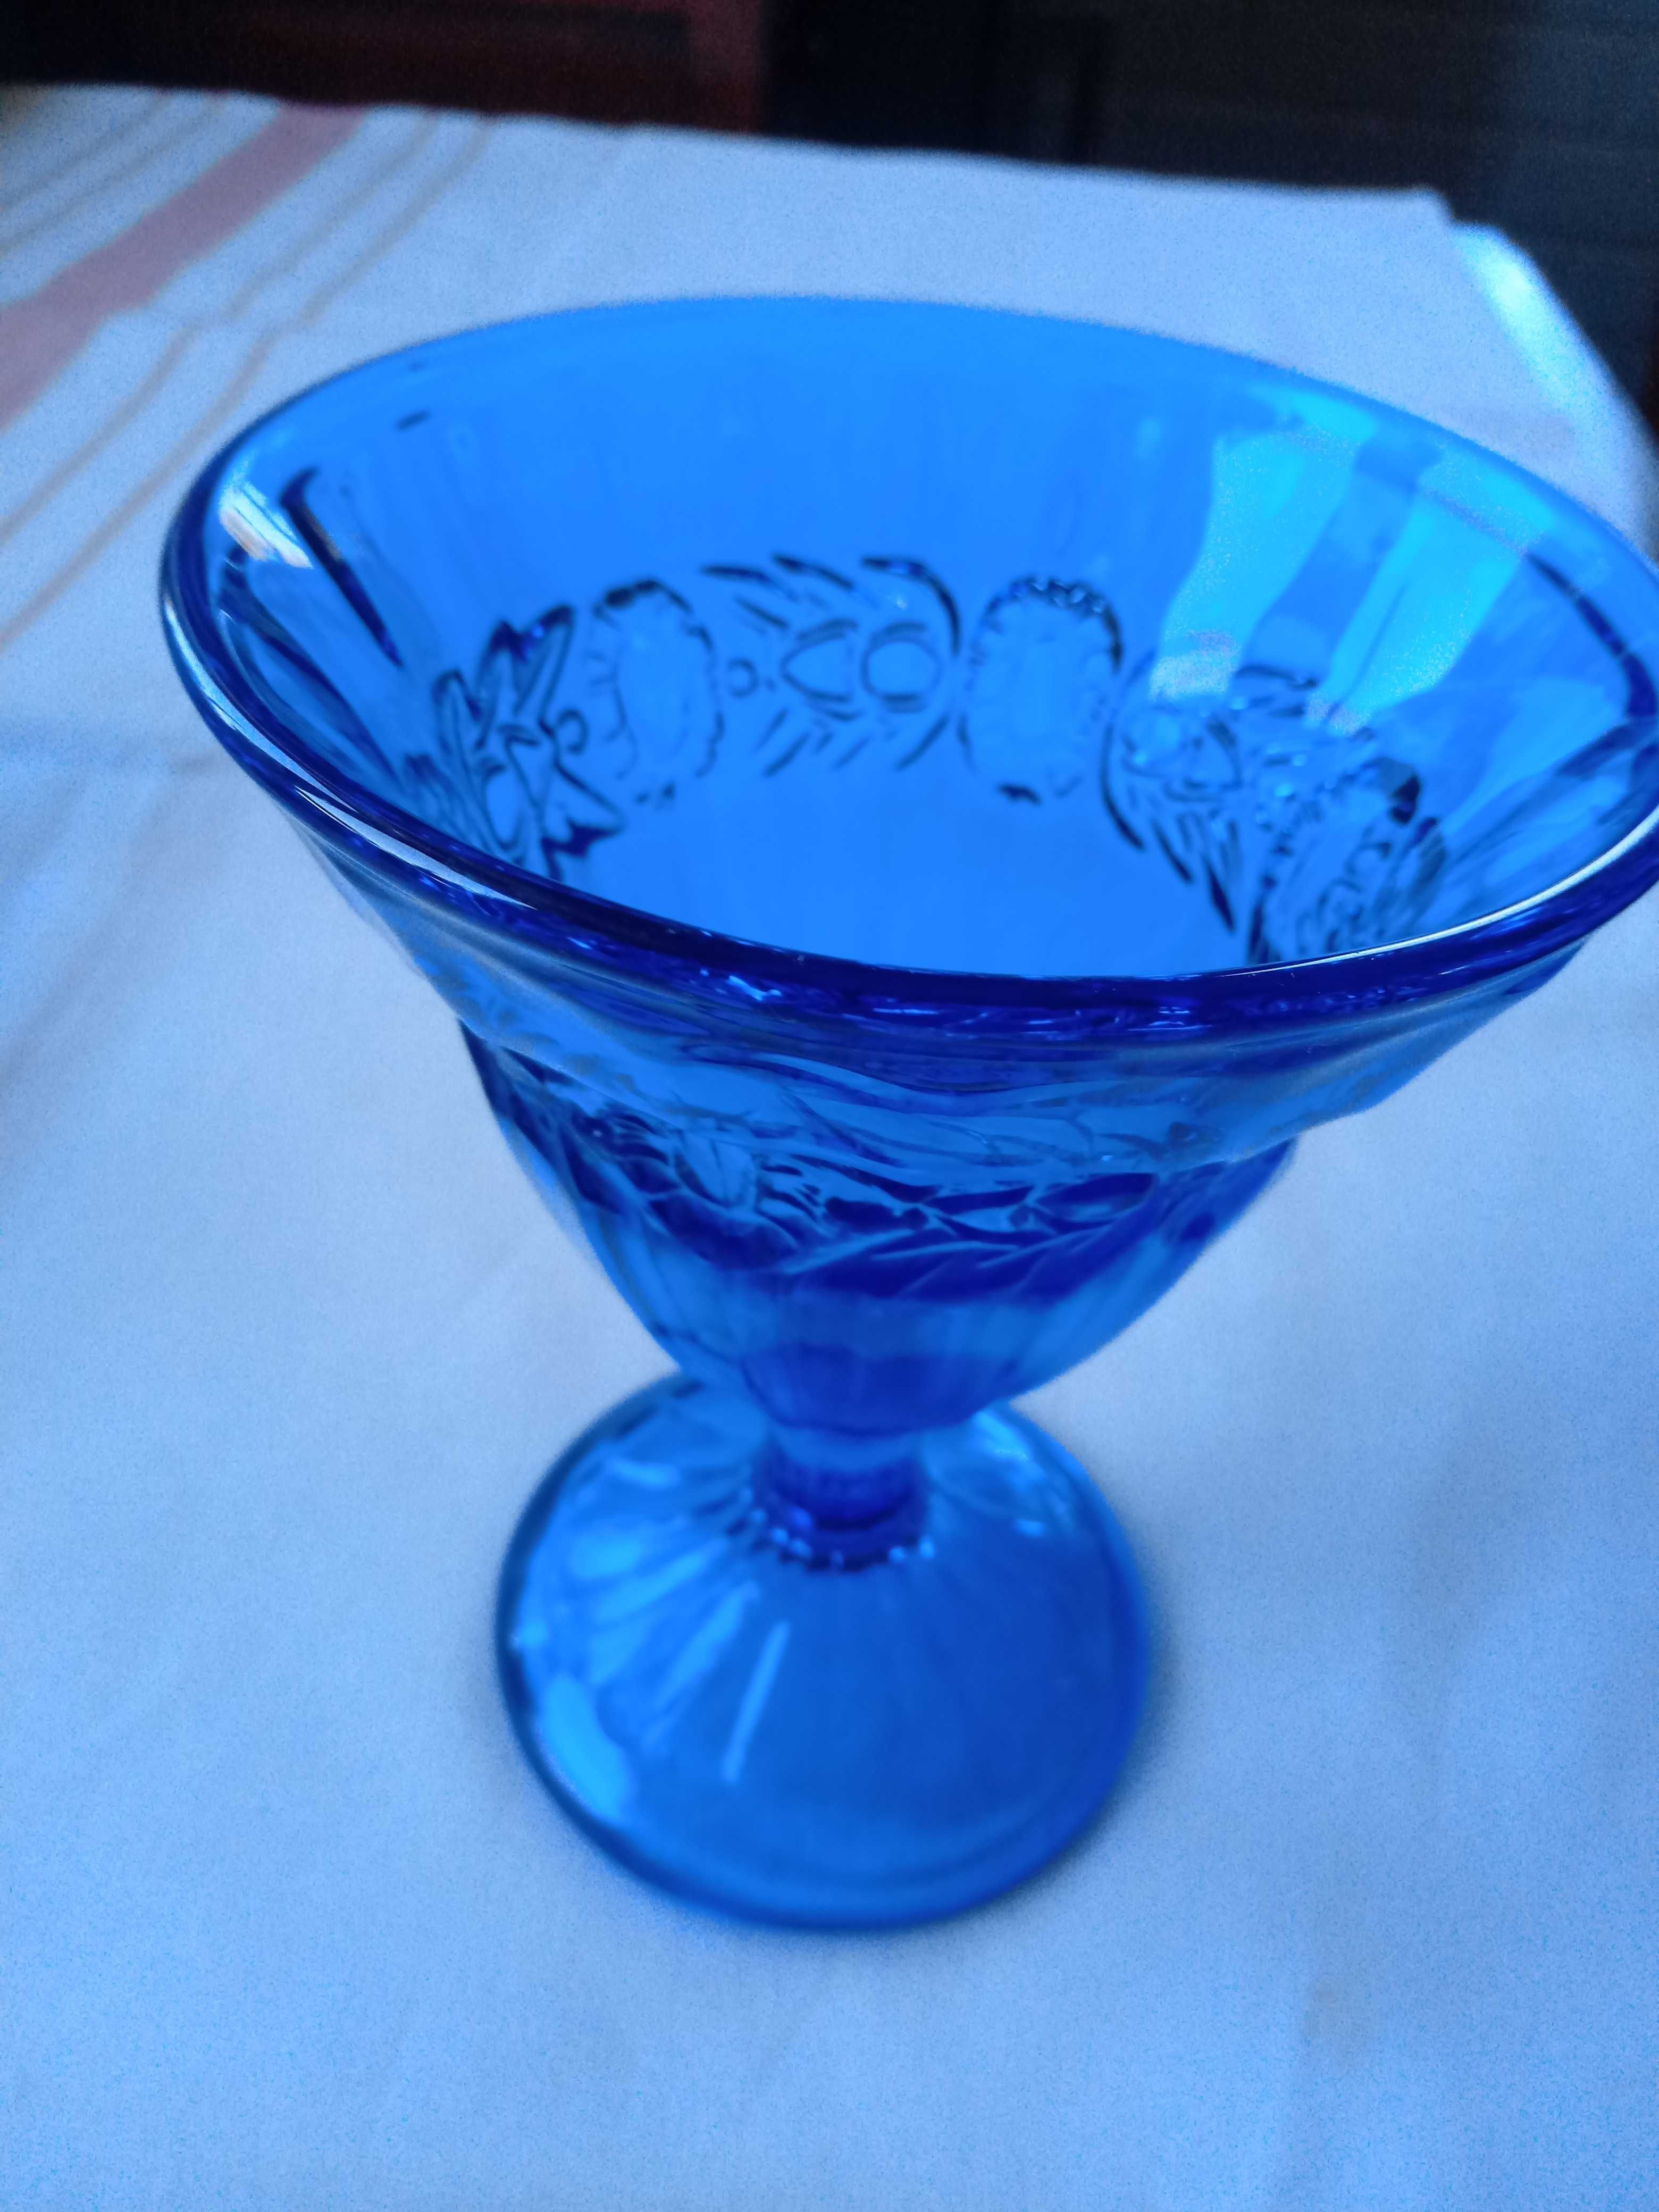 stary kobaltowy niebieski szklany pucharek cukiernica 2 sztuki lata 80